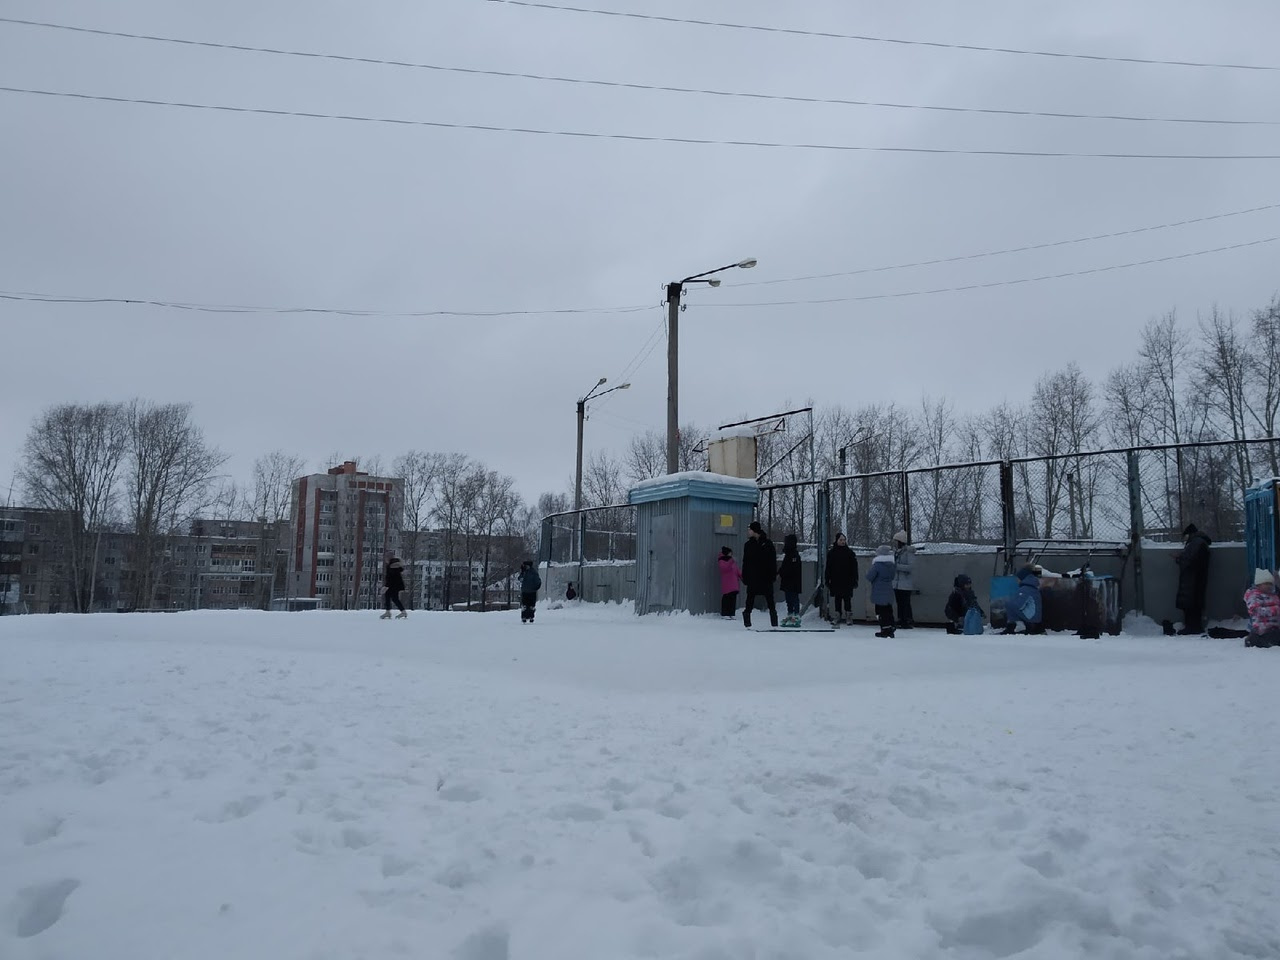 Прокат коньков, продажа выпечки и неочищенные площадки: как содержат городские катки в Кирове